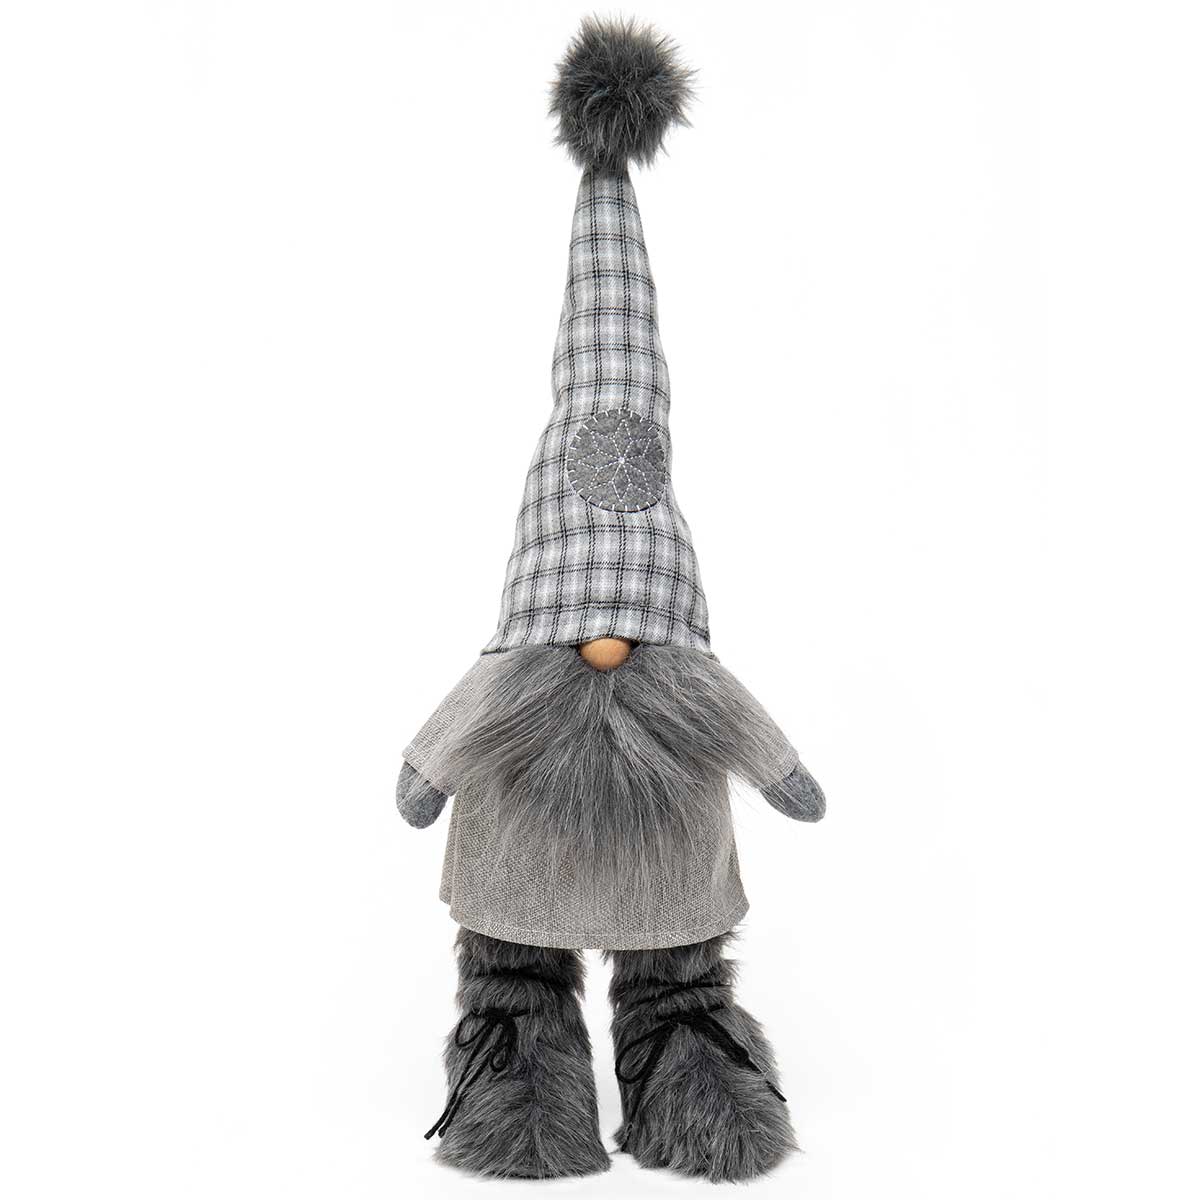 Oskar Standing Gnome Grey with Fur Pom-Pom, Wired Plaid Hat, Fur